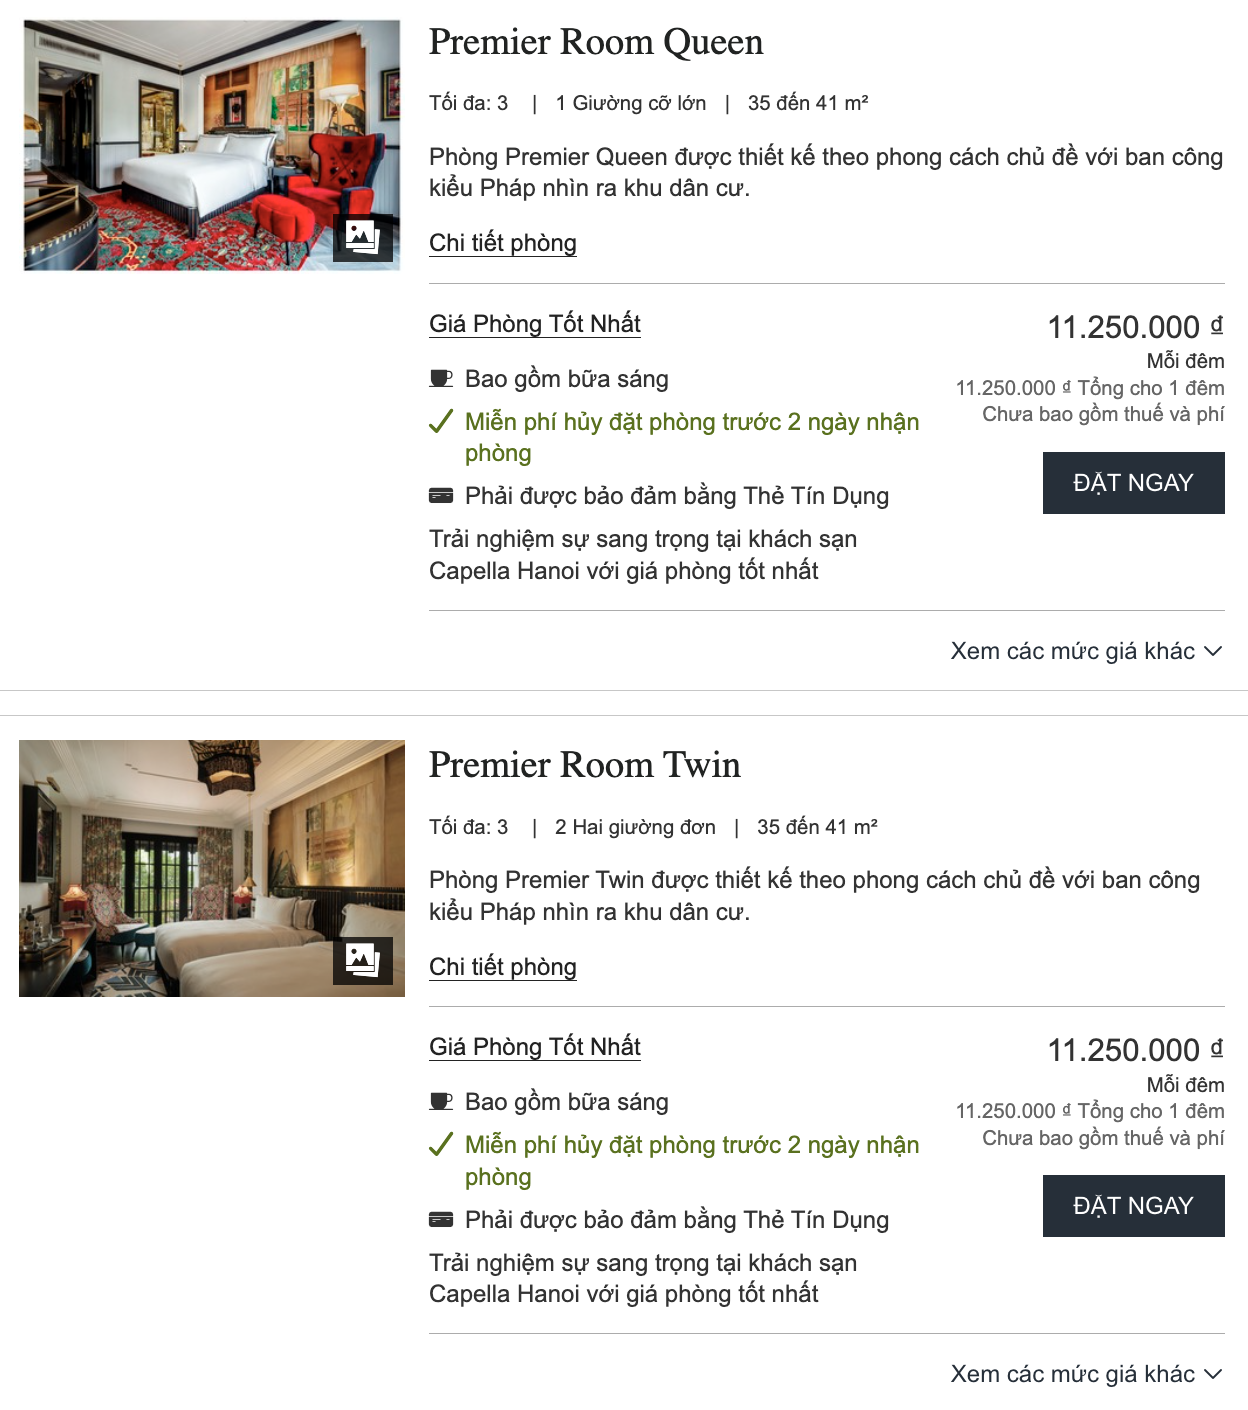 Cận cảnh khách sạn 5 sao đón BLACKPINK, dự đoán ở hạng phòng có giá hơn 100 triệu/đêm - Ảnh 6.